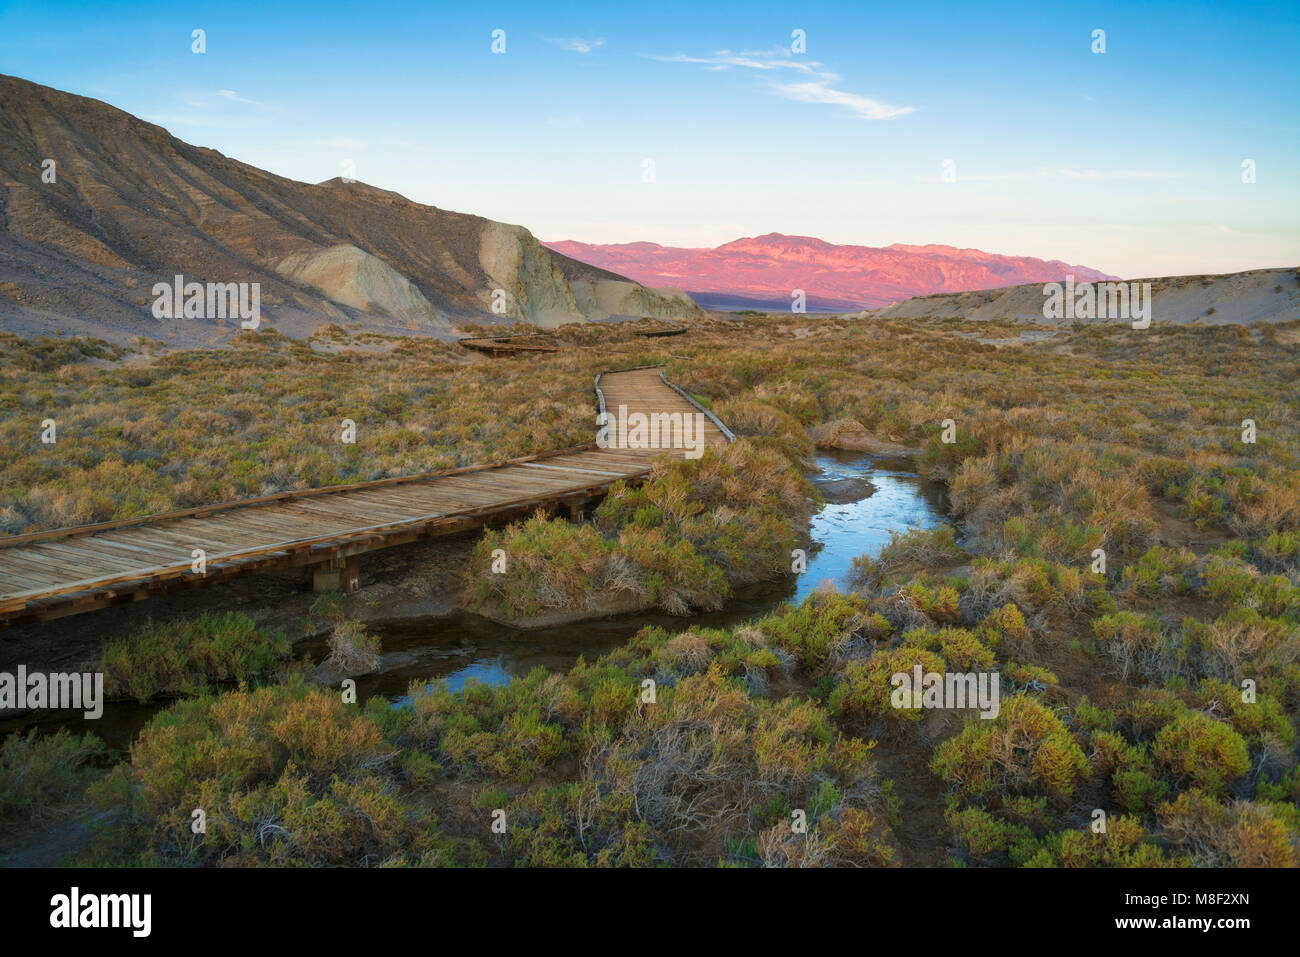 États-unis, Californie, Death Valley National Park, Salt Creek, une promenade à côté de stream Banque D'Images